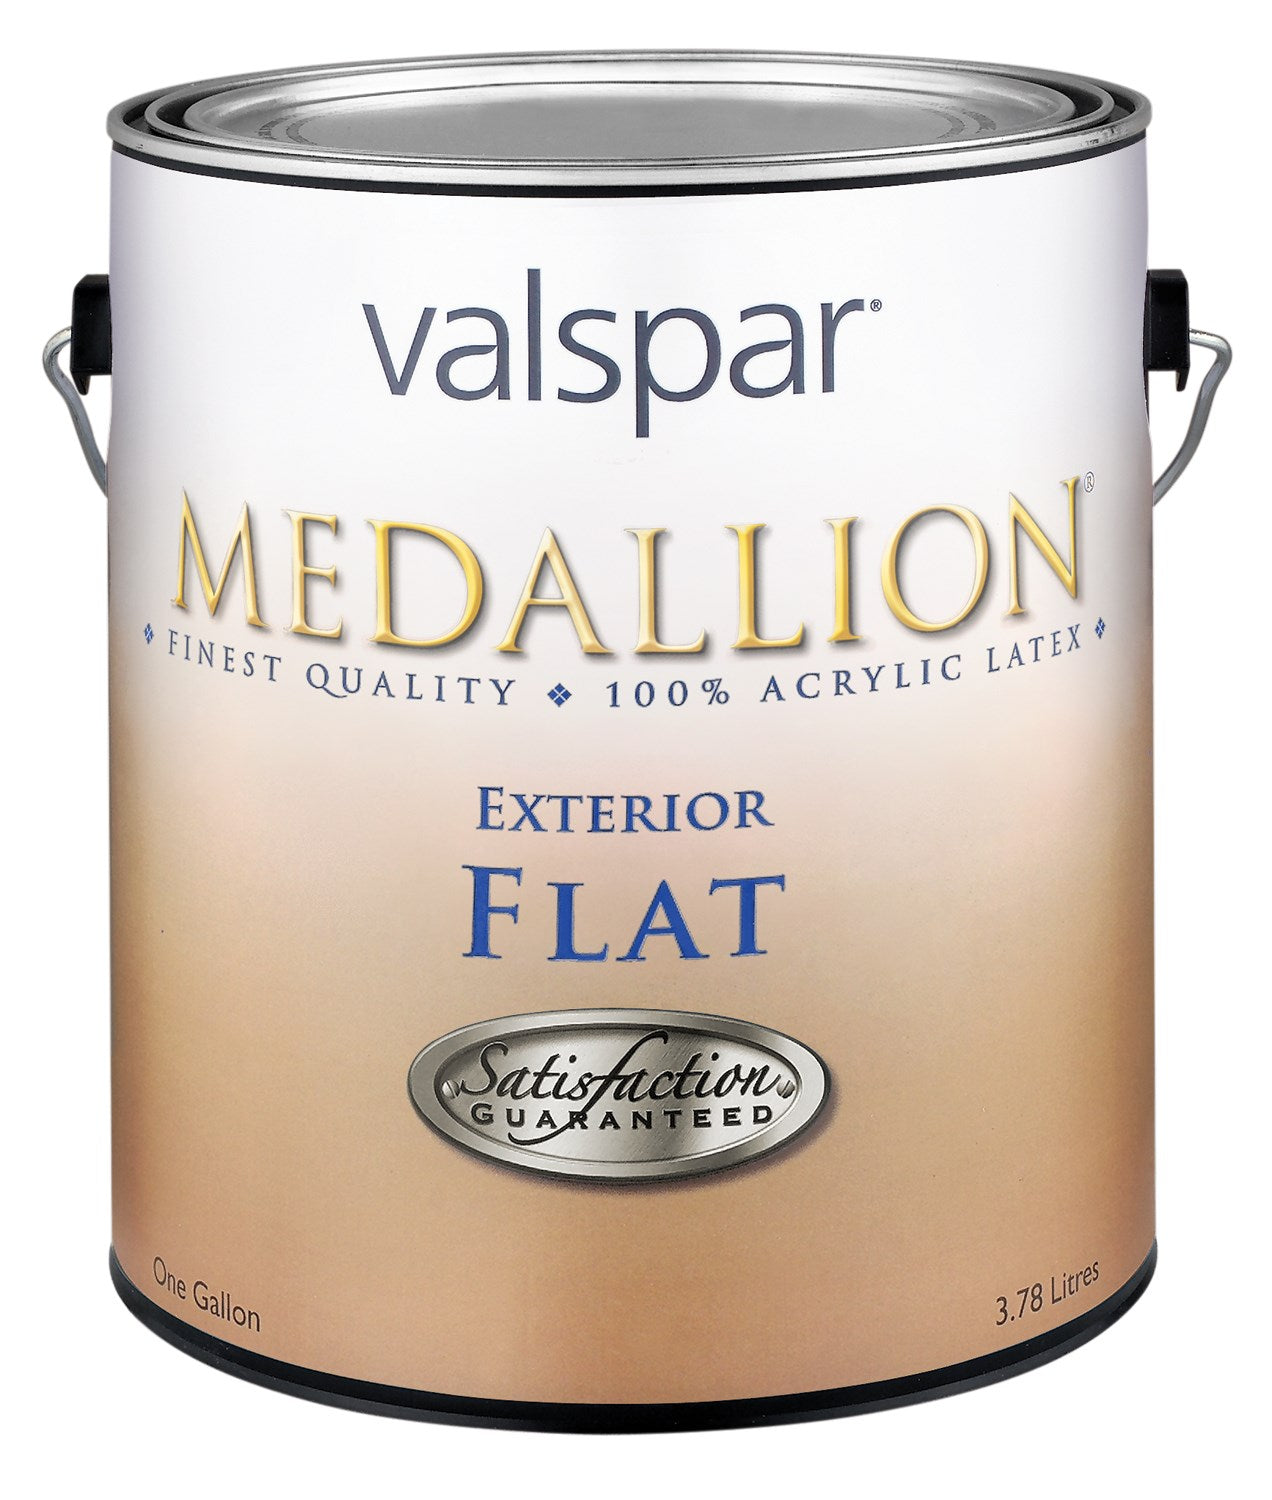 VALSPAR CORPORATION, Medallion 27-45501 GL 1 gallon de peinture d'extérieur au latex blanc mat Medallion (paquet de 4)